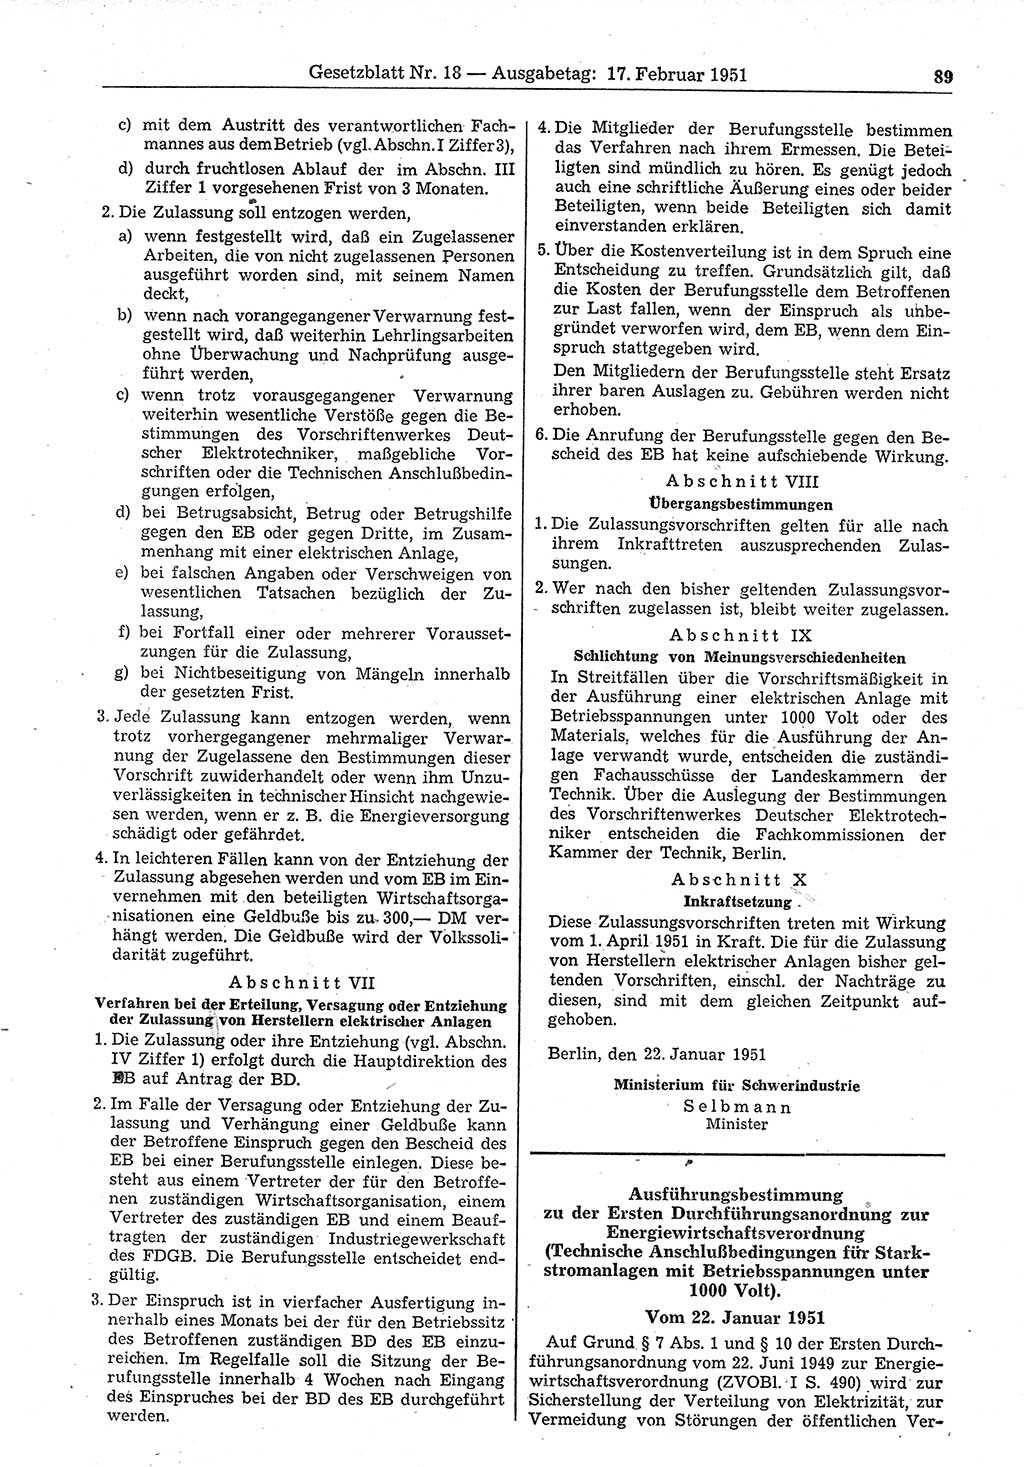 Gesetzblatt (GBl.) der Deutschen Demokratischen Republik (DDR) 1951, Seite 89 (GBl. DDR 1951, S. 89)